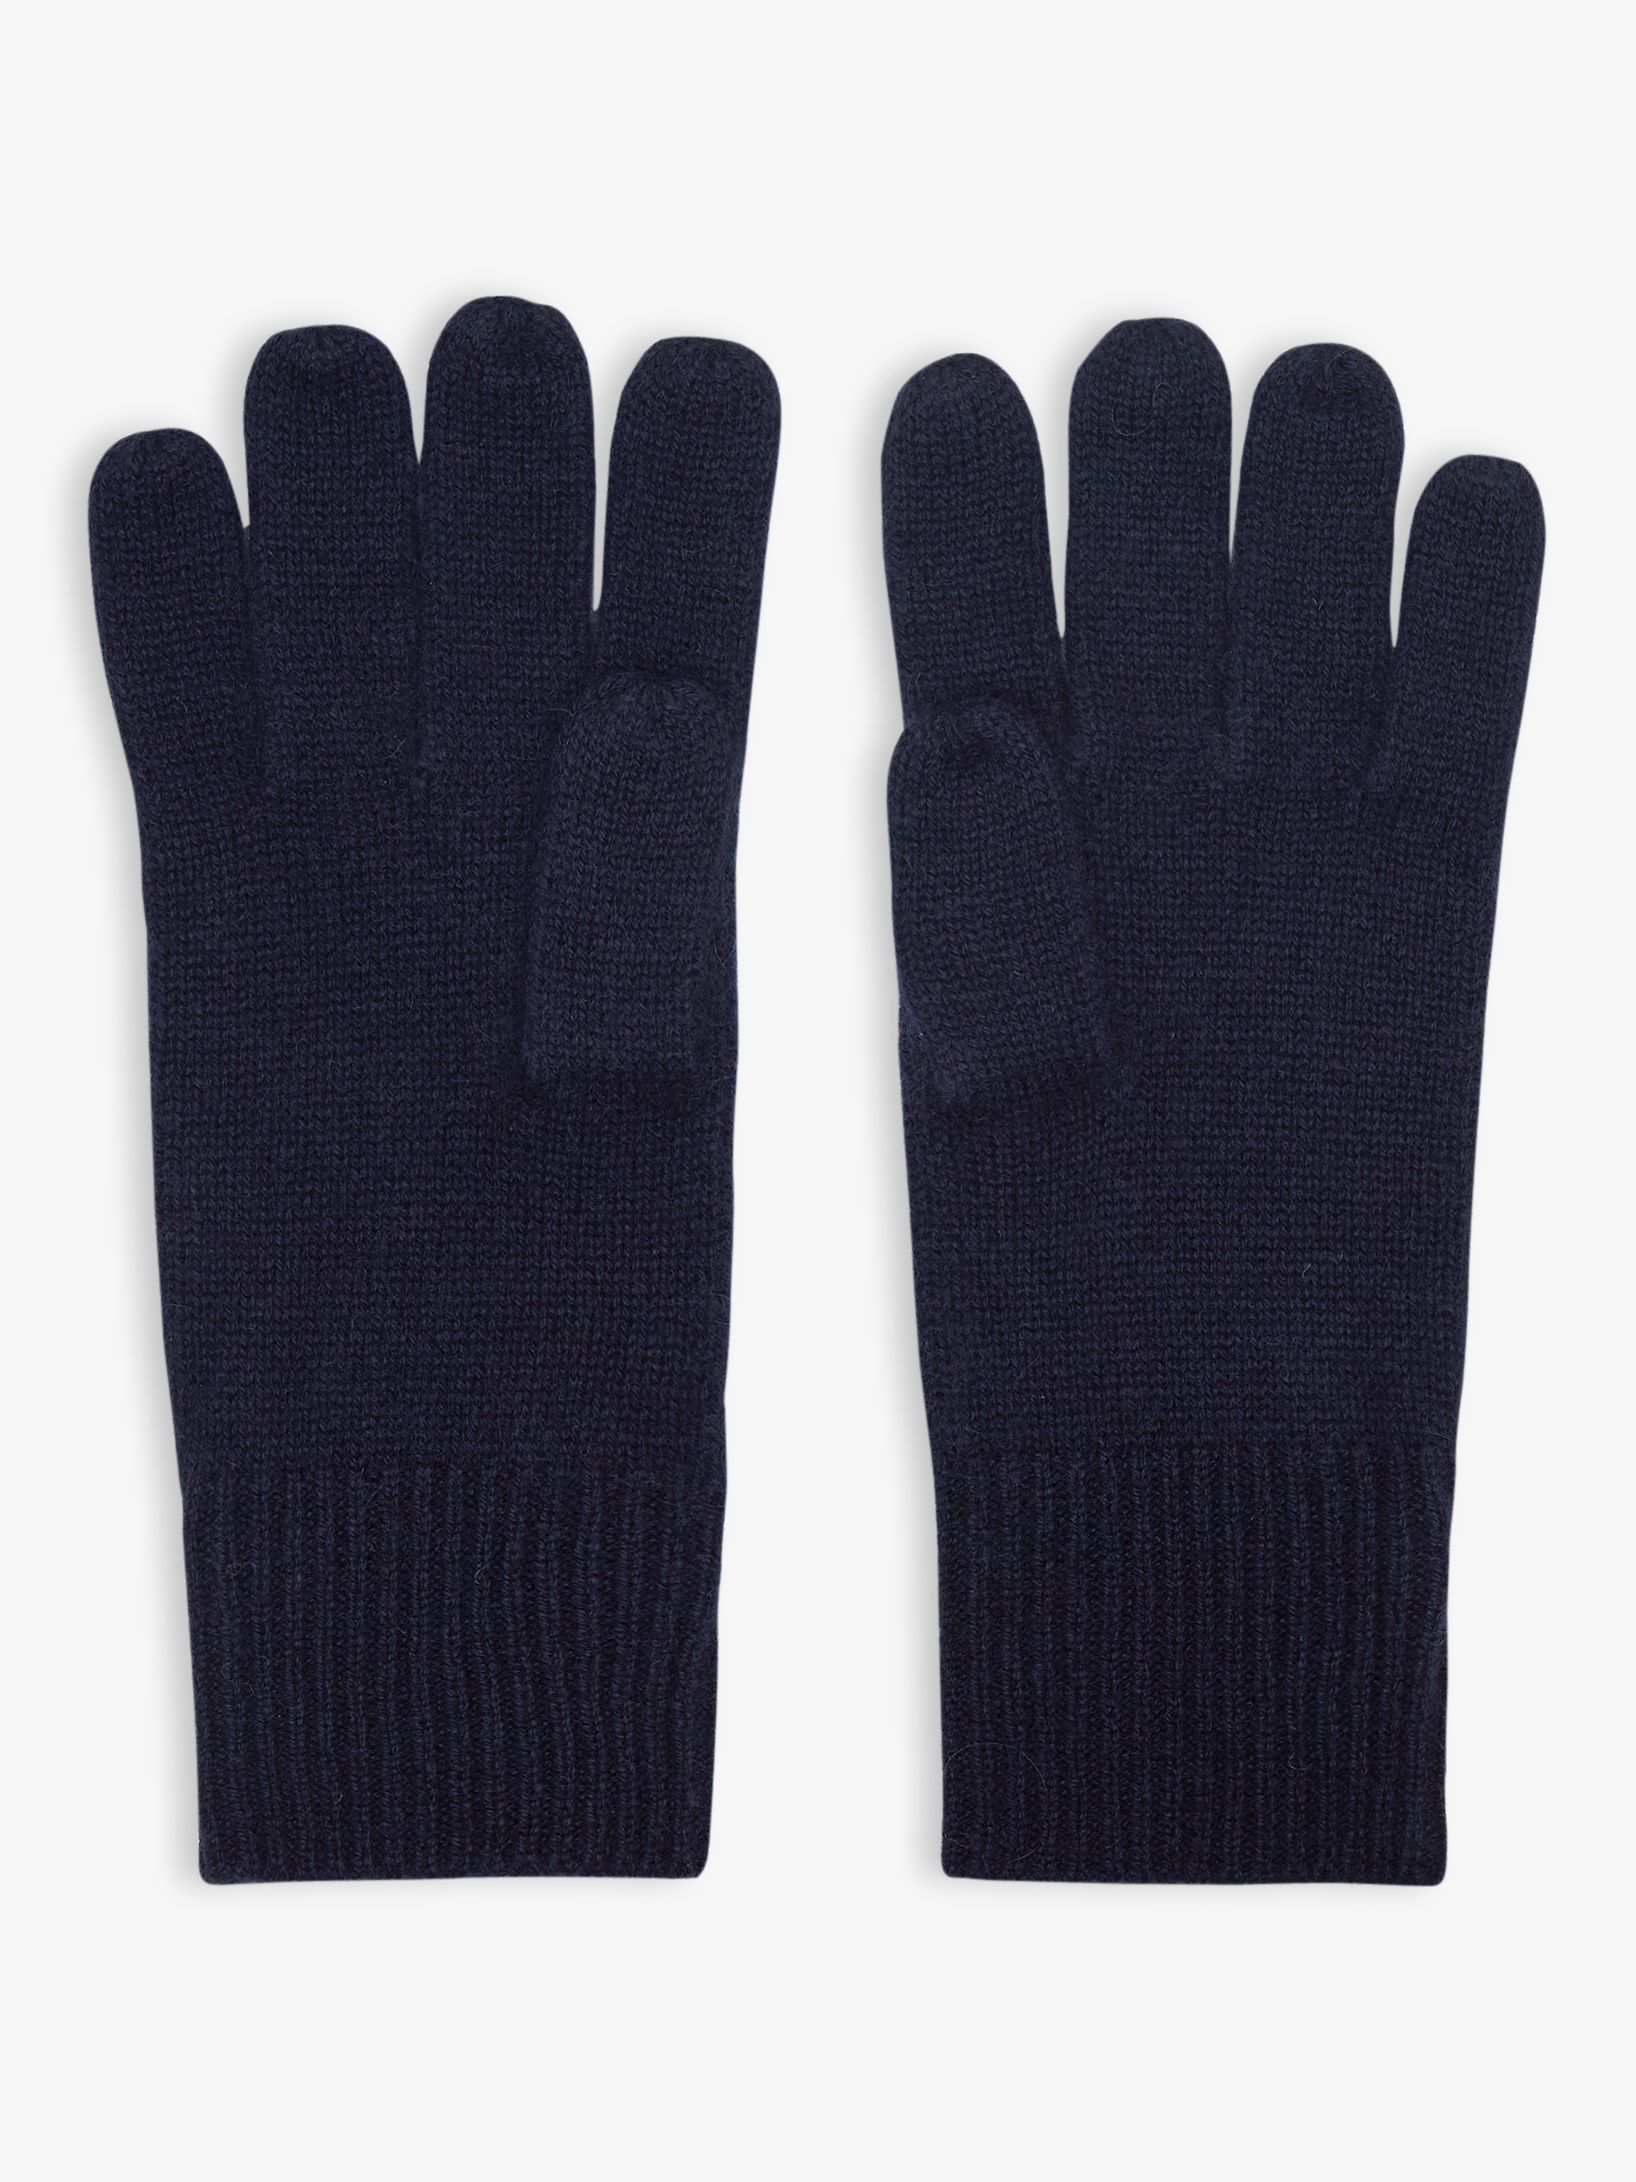 Reiss Emmerson Cashmere Gloves